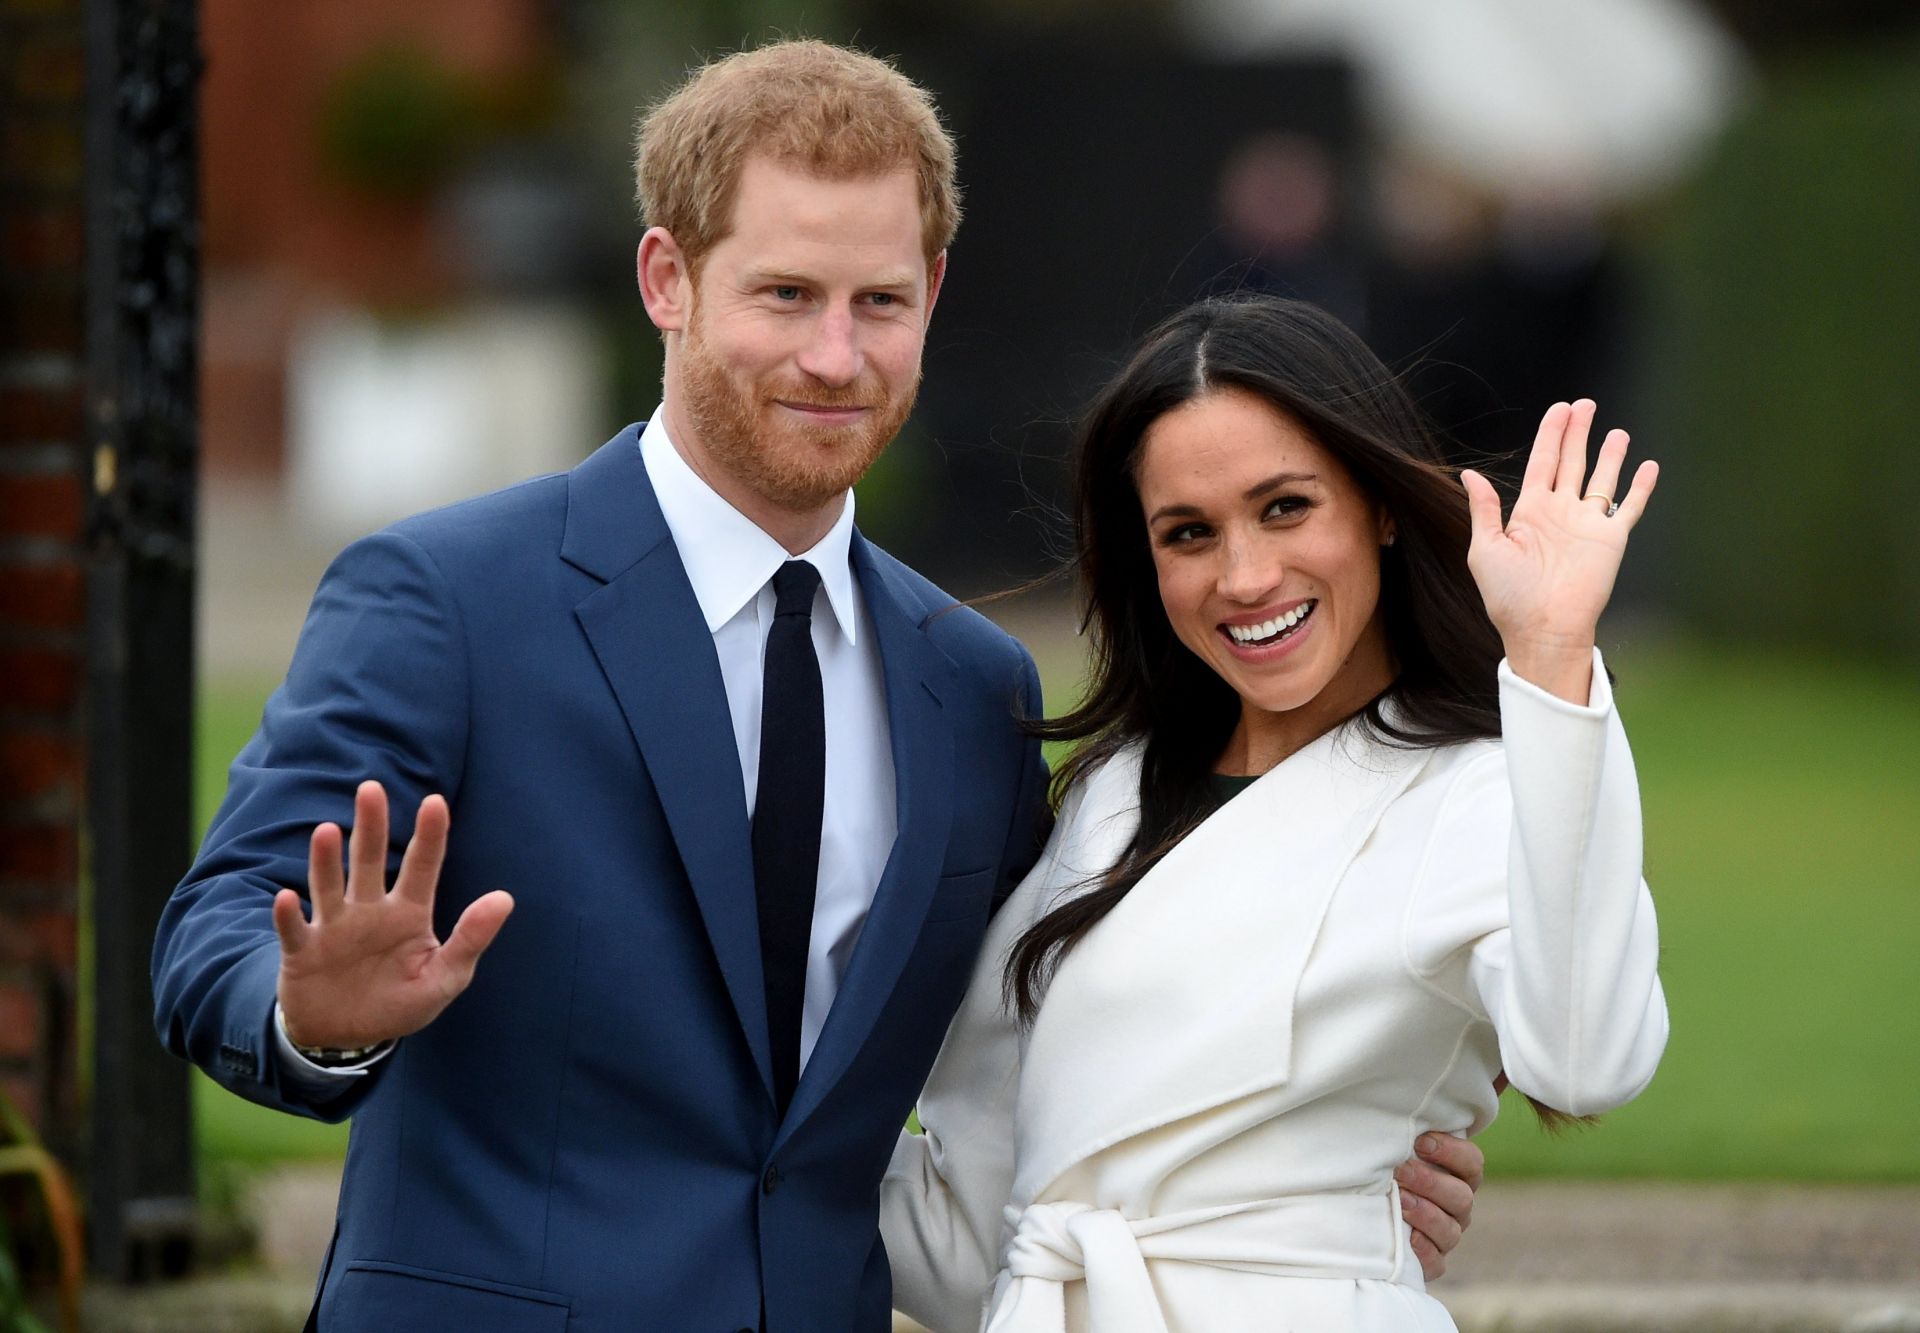  El príncipe Enrique de Inglaterra posa junto a su prometida, la actriz estadounidense Meghan Markle, tras anunciar su compromiso en el Jardín Sunken del Palacio Kensington